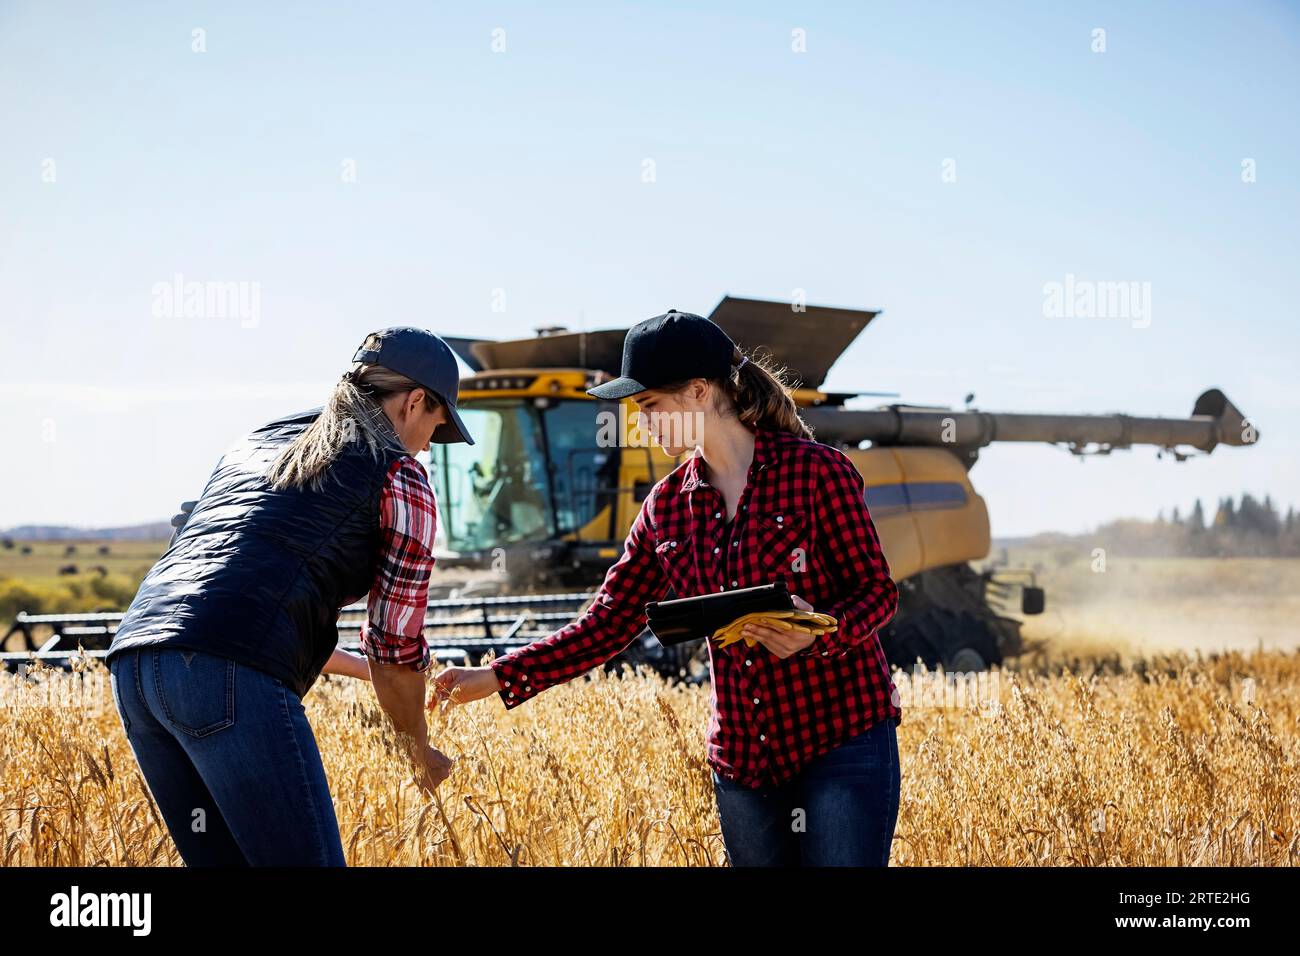 Eine reife Landwirtschaftsfrau, die auf einem Feld steht und mit einer jungen Frau bei der Ernte arbeitet, die Getreide kontrolliert und fortschrittliche Agrarsoftware verwendet... Stockfoto